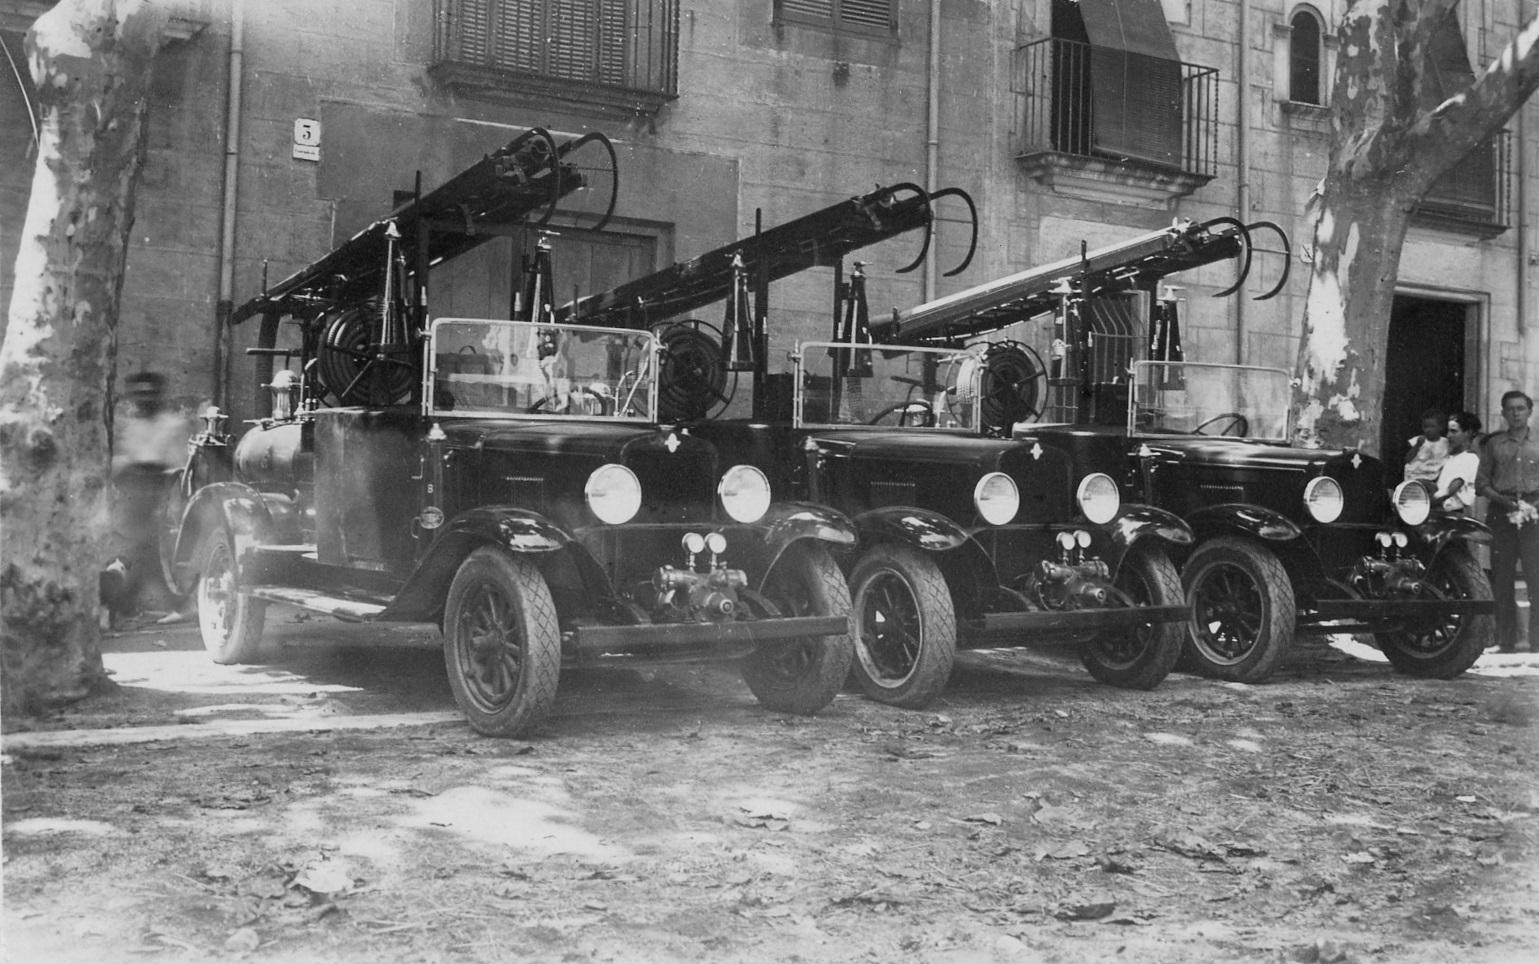 Bombers de l’Hospitalet de Llobregat amb autoritats civils, el setembre de 1936